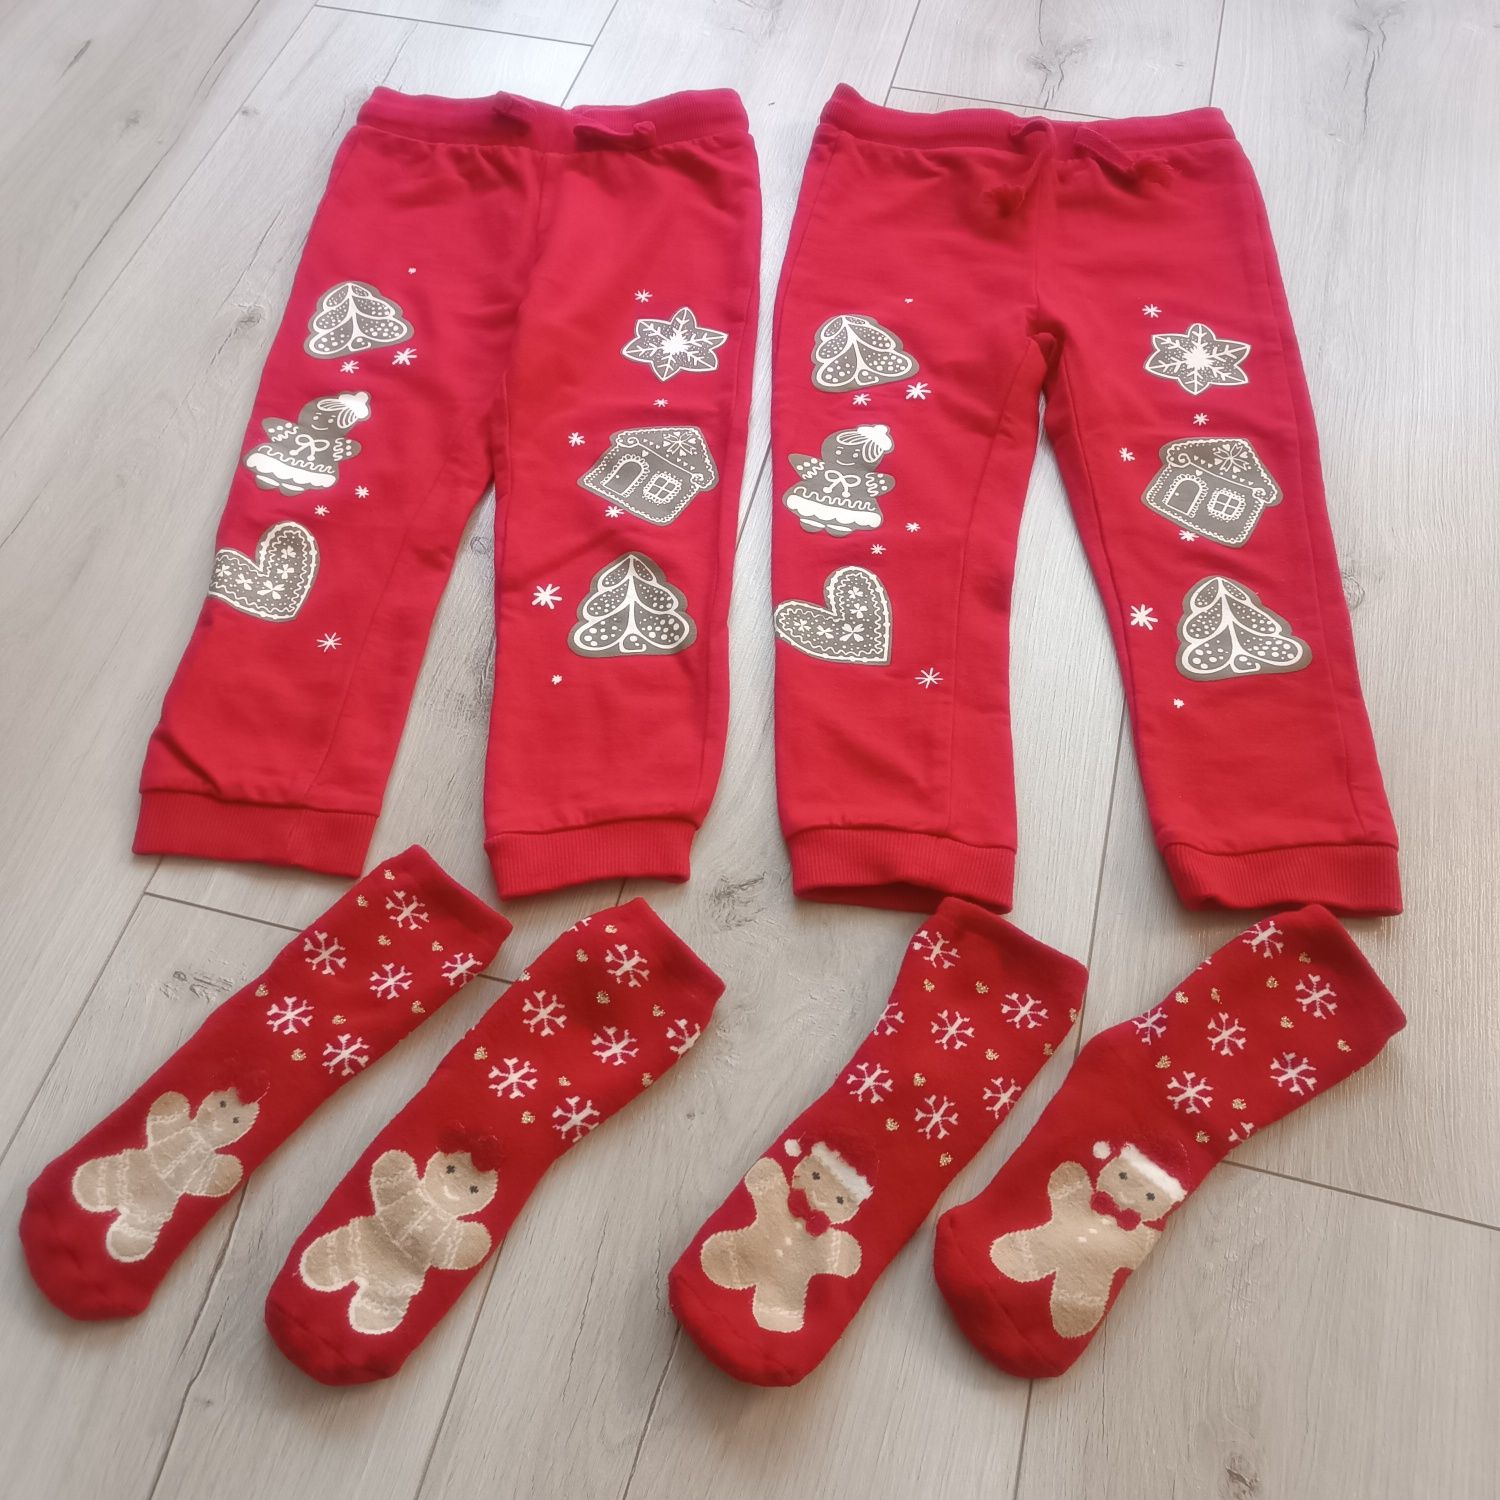 Spodnie świąteczne + skarpetki dla bliźniaczek 98 cm czerwone Święta